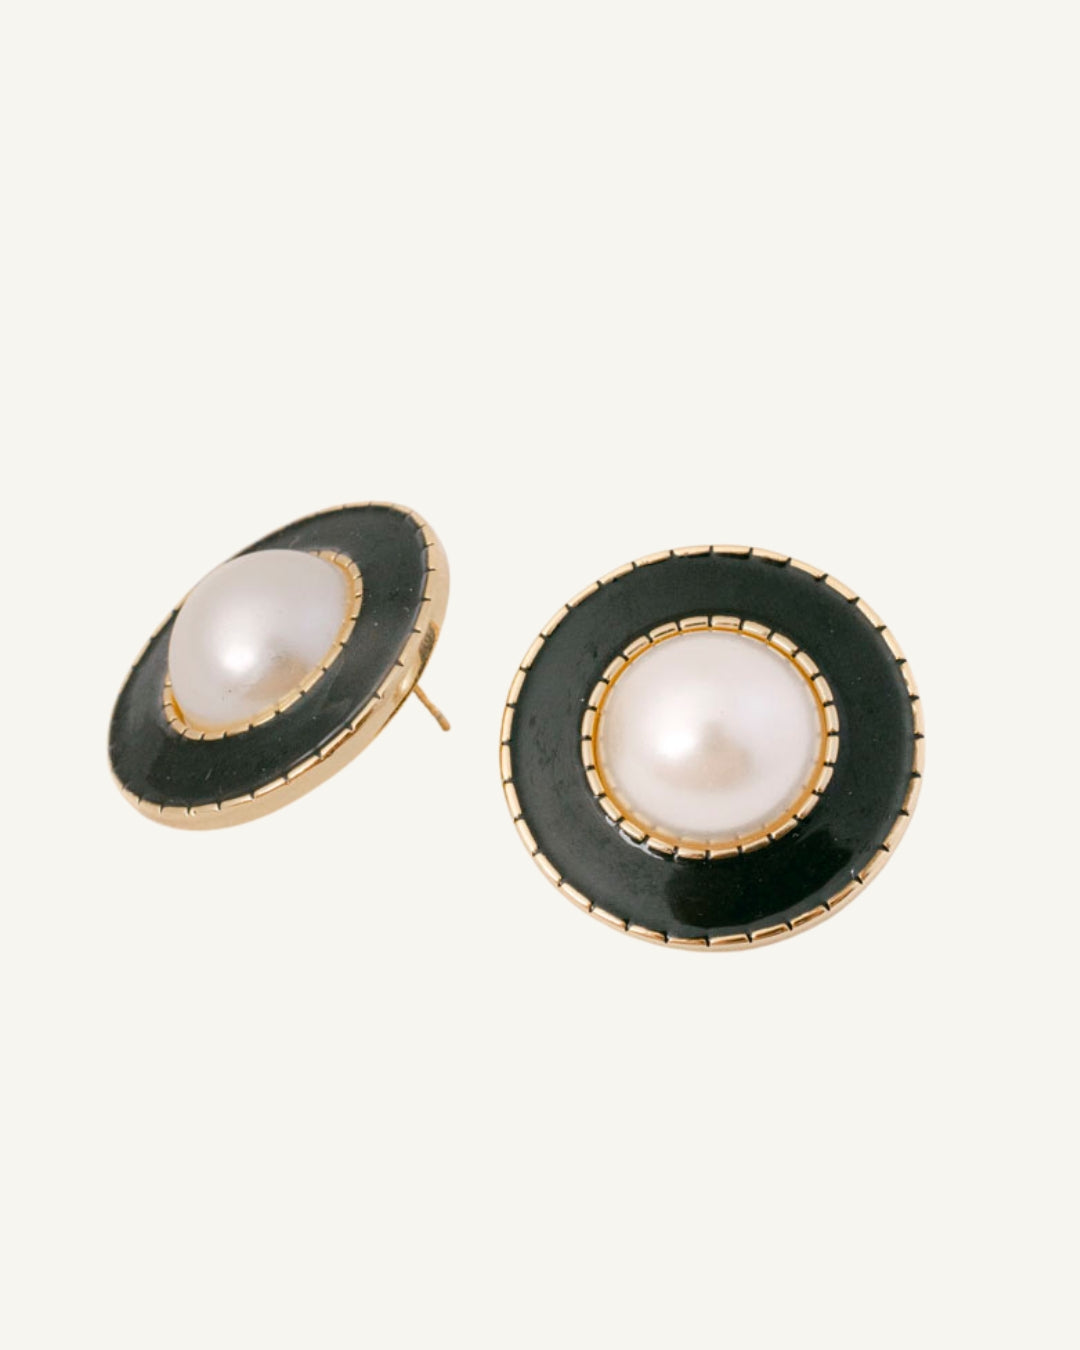 "Mirjana" earrings